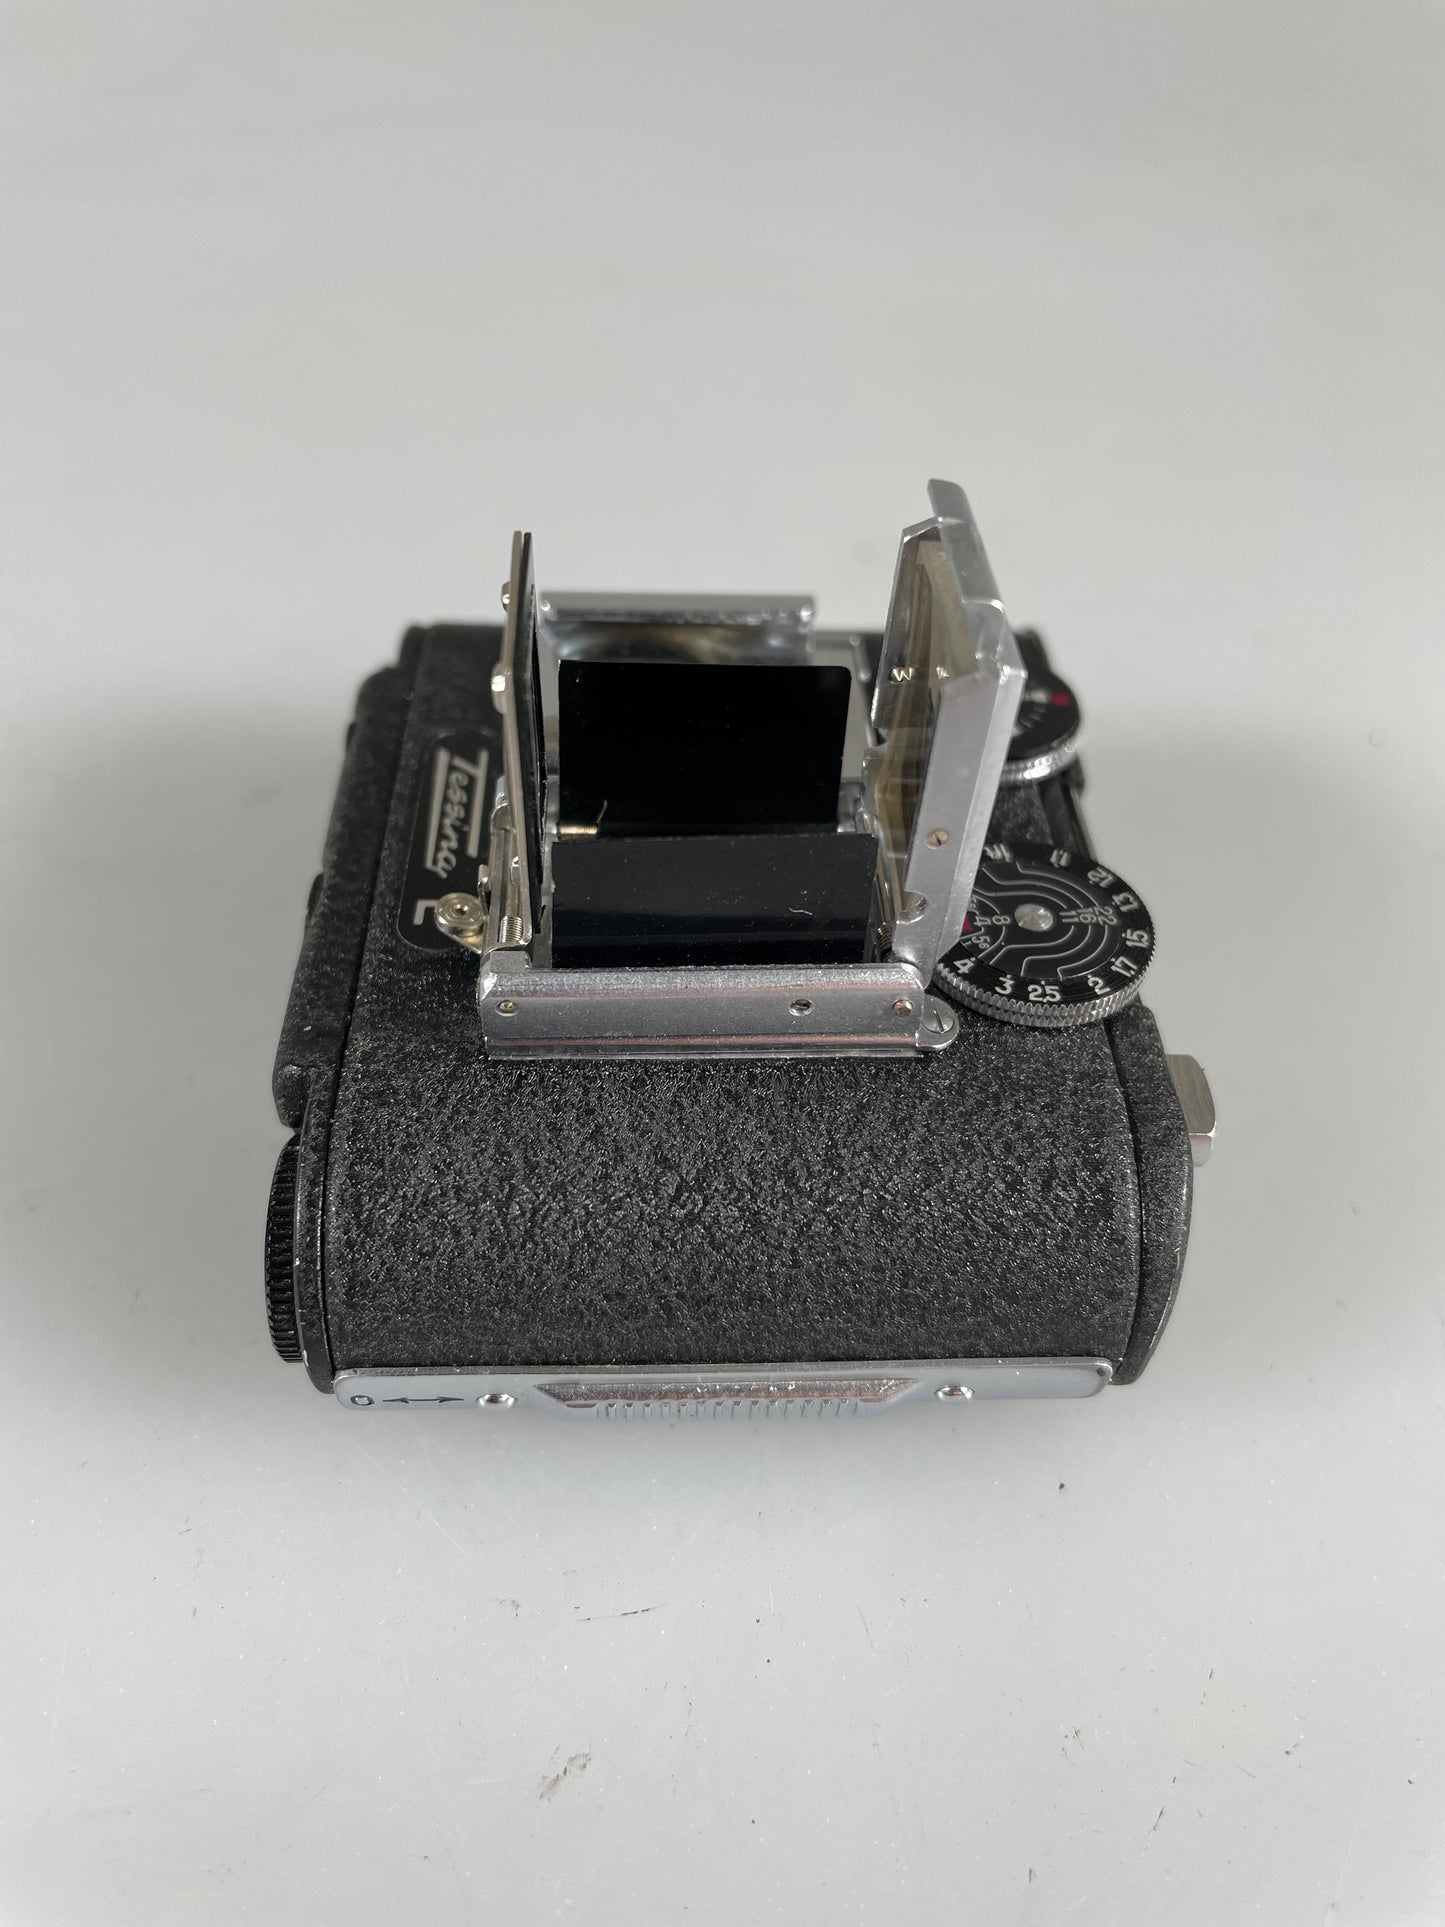 Tessina 35 L with 25mm F2.8 lens RARE Black w/ case, meter, prism, finder